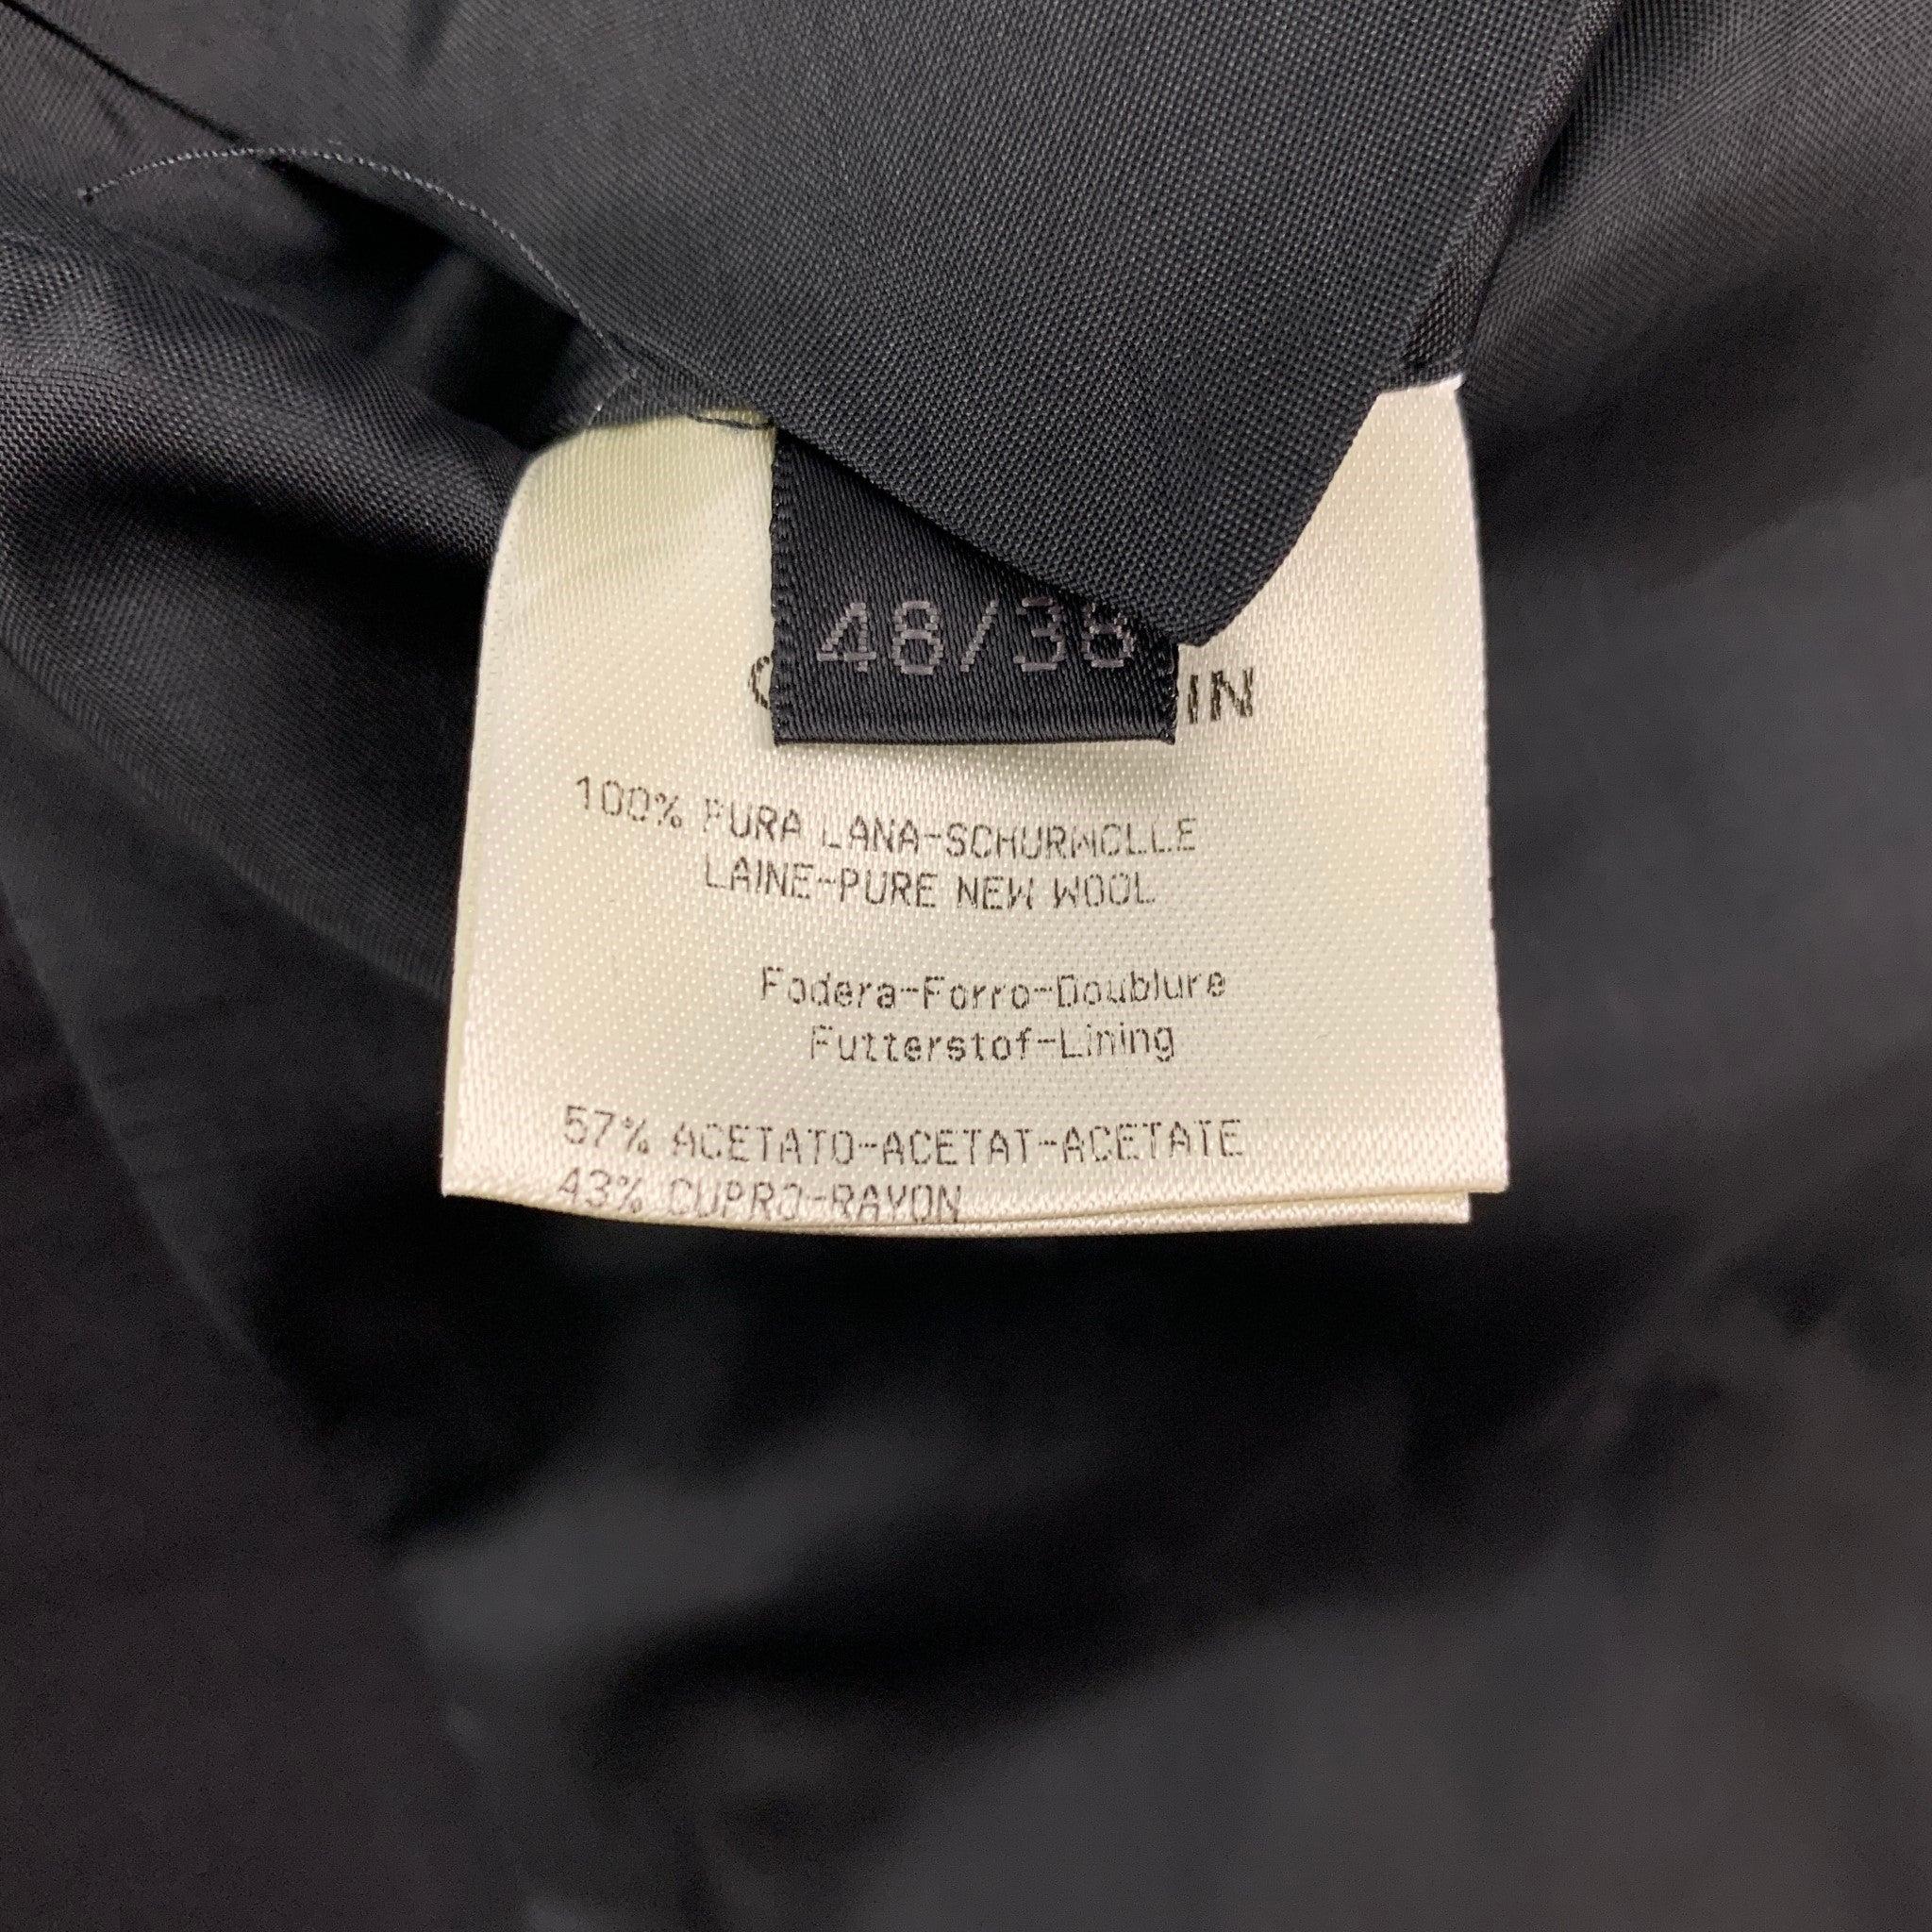 CALVIN KLEIN COLLECTION Size 38 Black Wool Notch Lapel Suit For Sale 4